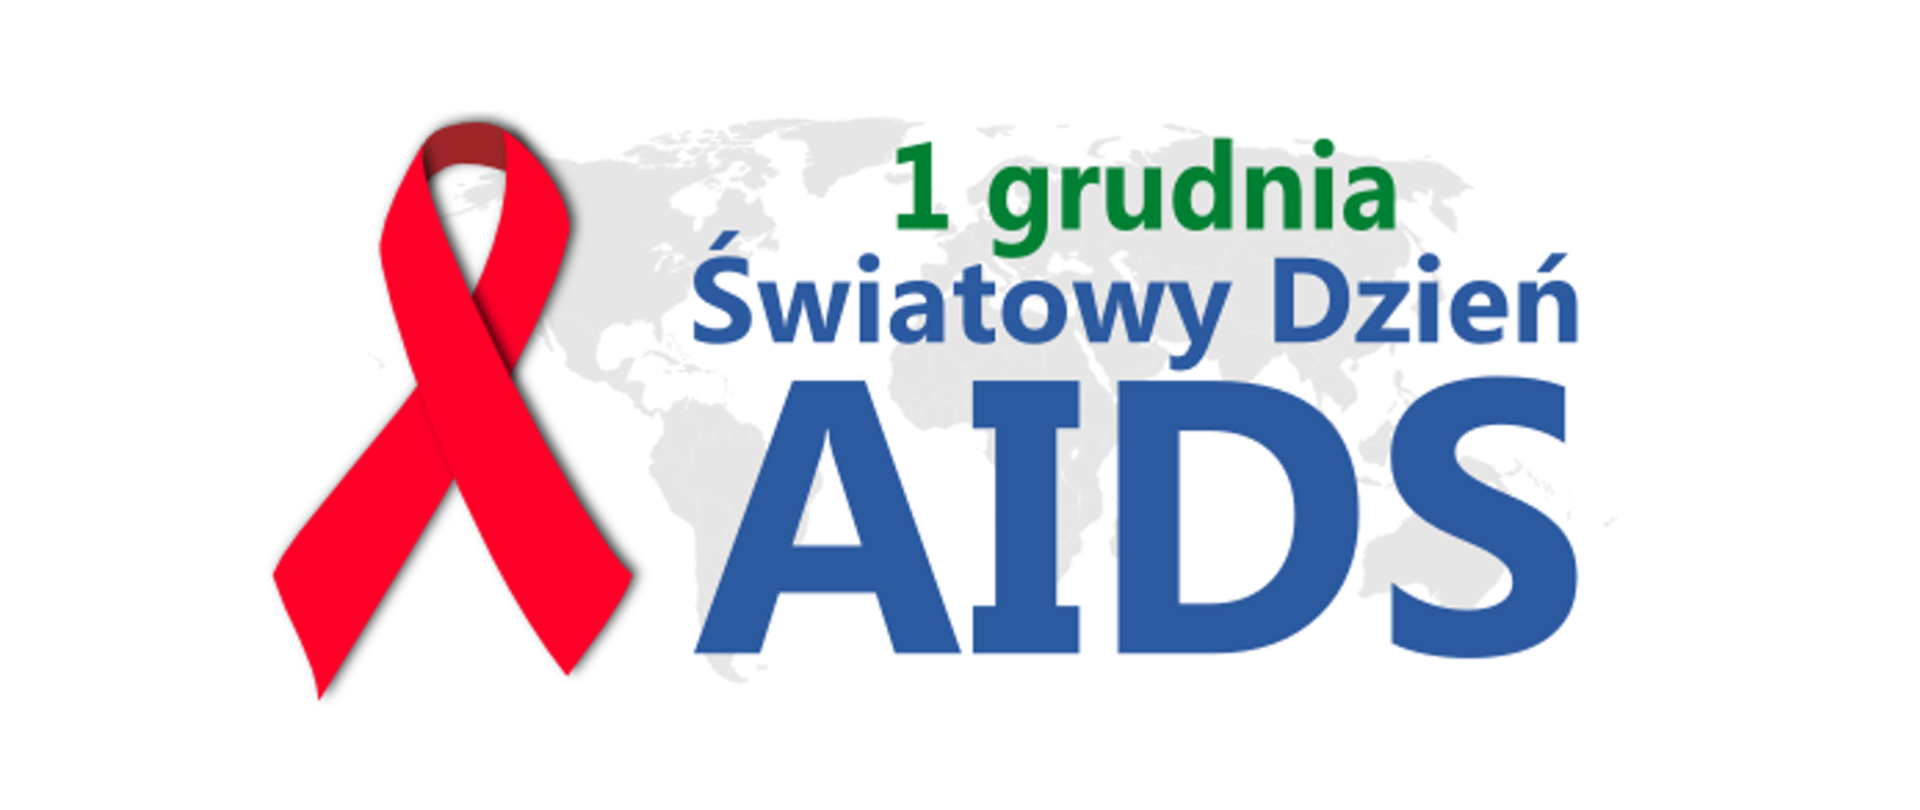 Światowy_dzień_AIDS